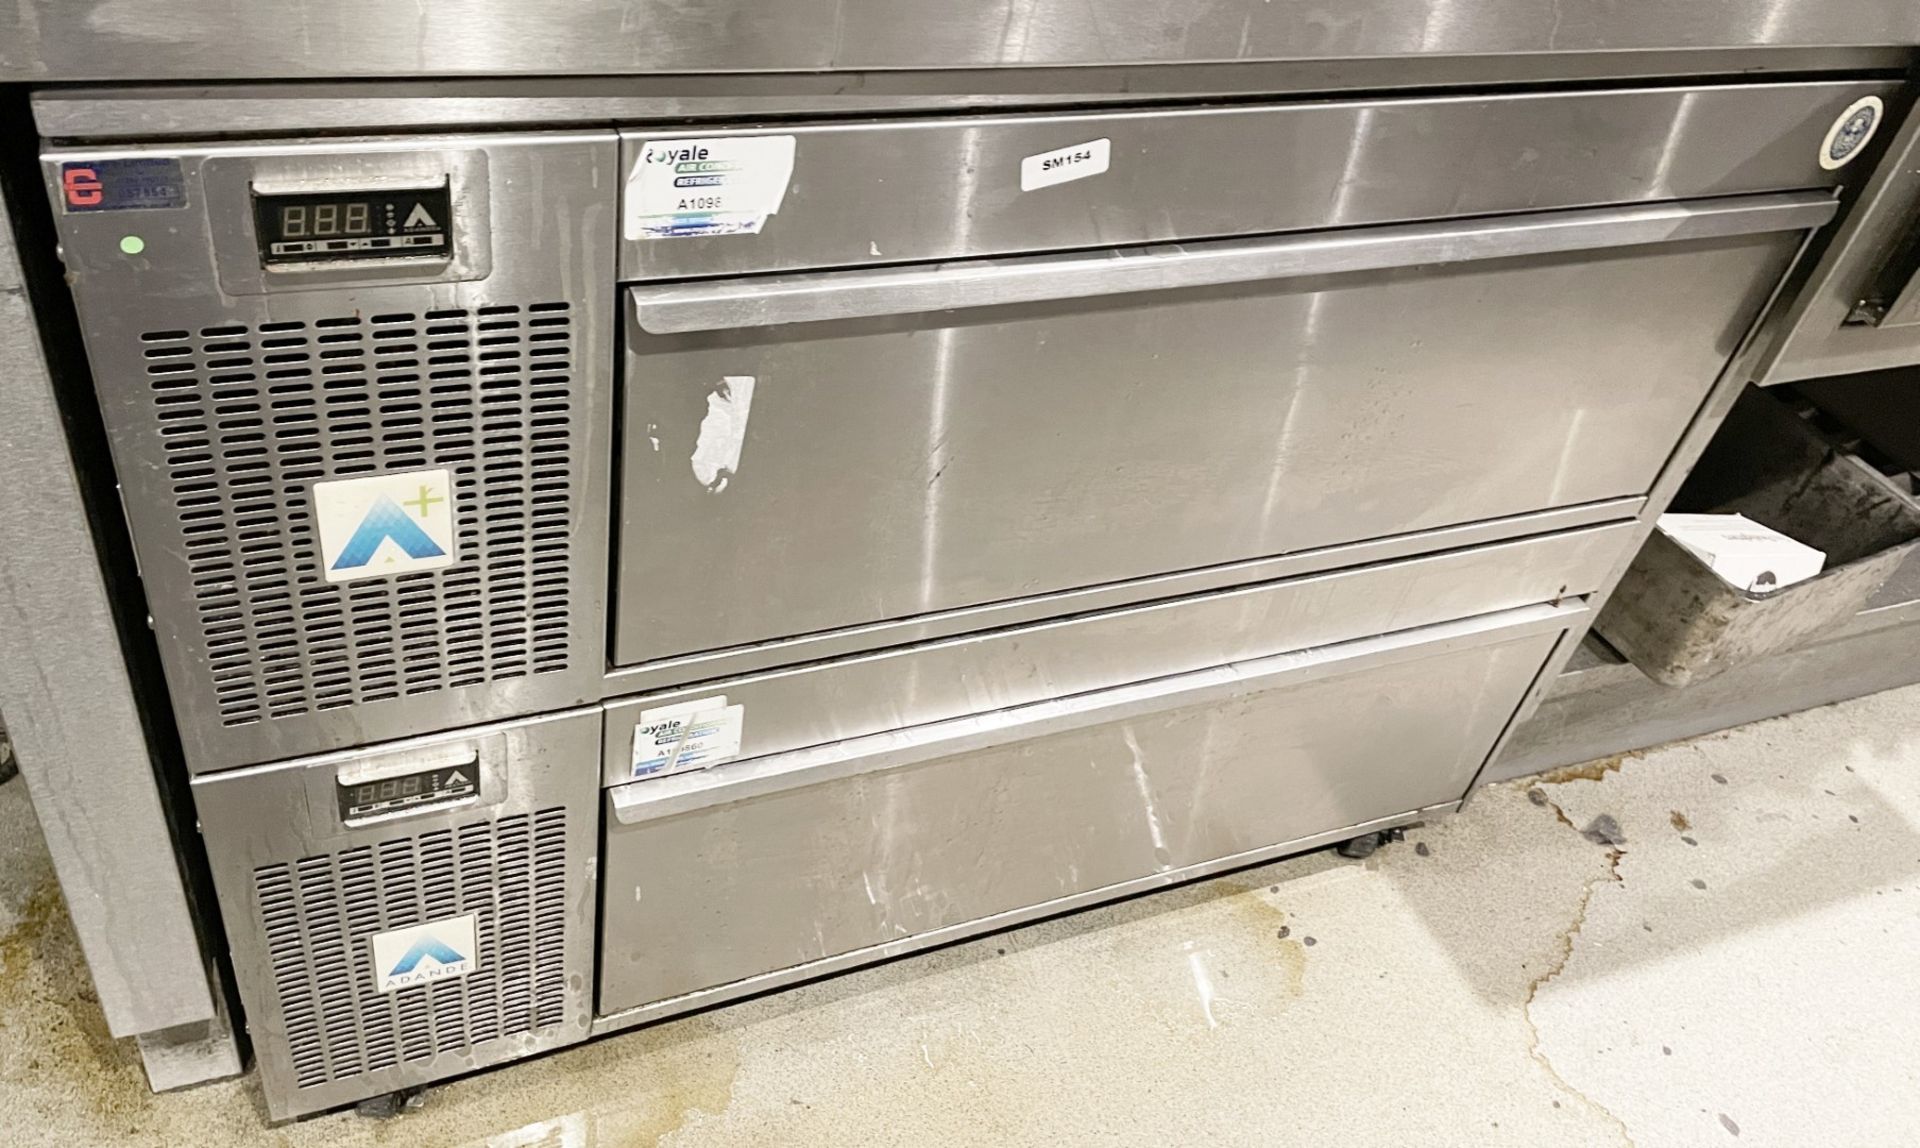 1 x Adande Chef Base Twin Drawer Refrigerator - Dimensions: H85 x W110 x D70 cms